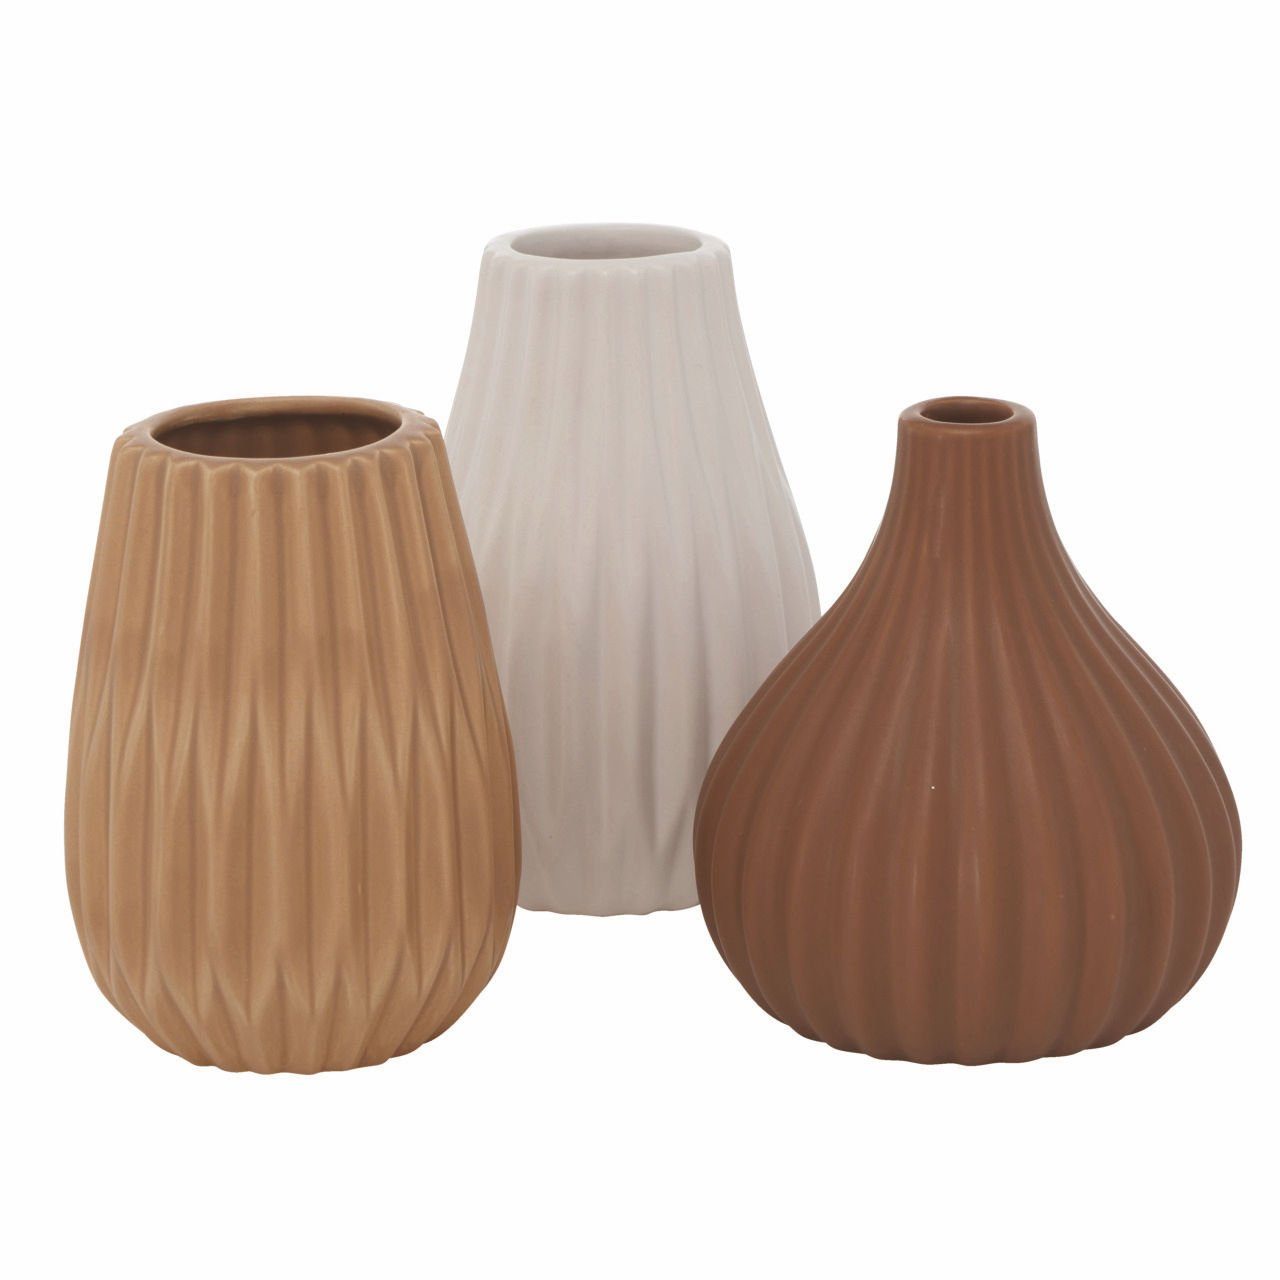 Spetebo Dekovase Keramik Blumen Vase WILMA 3er Set - weiß / braun (3er Set, 3 St., 3 unterschiedliche Vasen), Stein Tischvase mit Rillenmuster